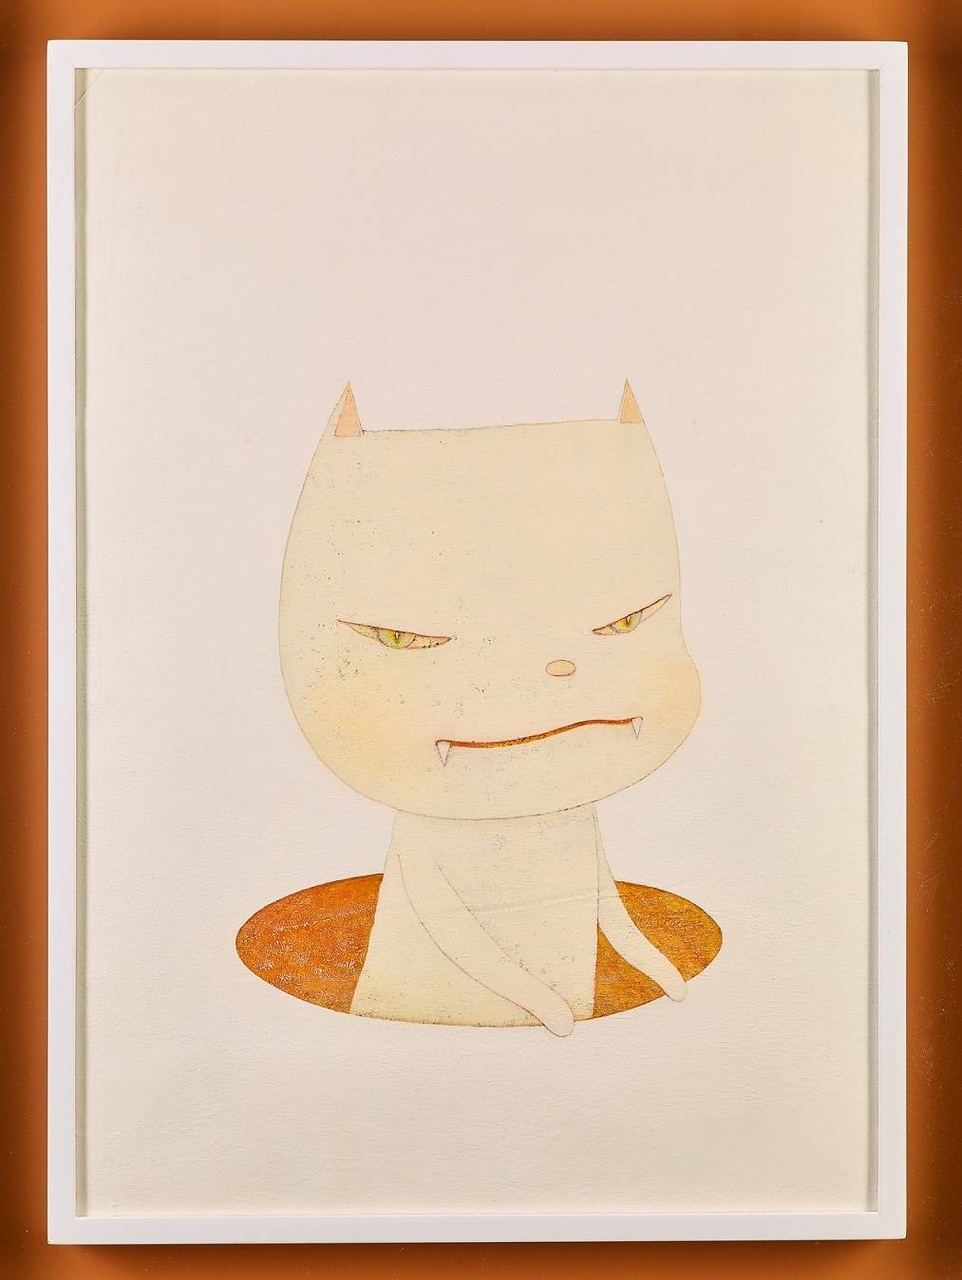 拍品編號1029 ：奈良美智 白夜貓，亞克力紙本，鏡框，簽名於畫背，51.7 × 36.1 cm，2002 年。估價：HKD  800,000-1,500,000。